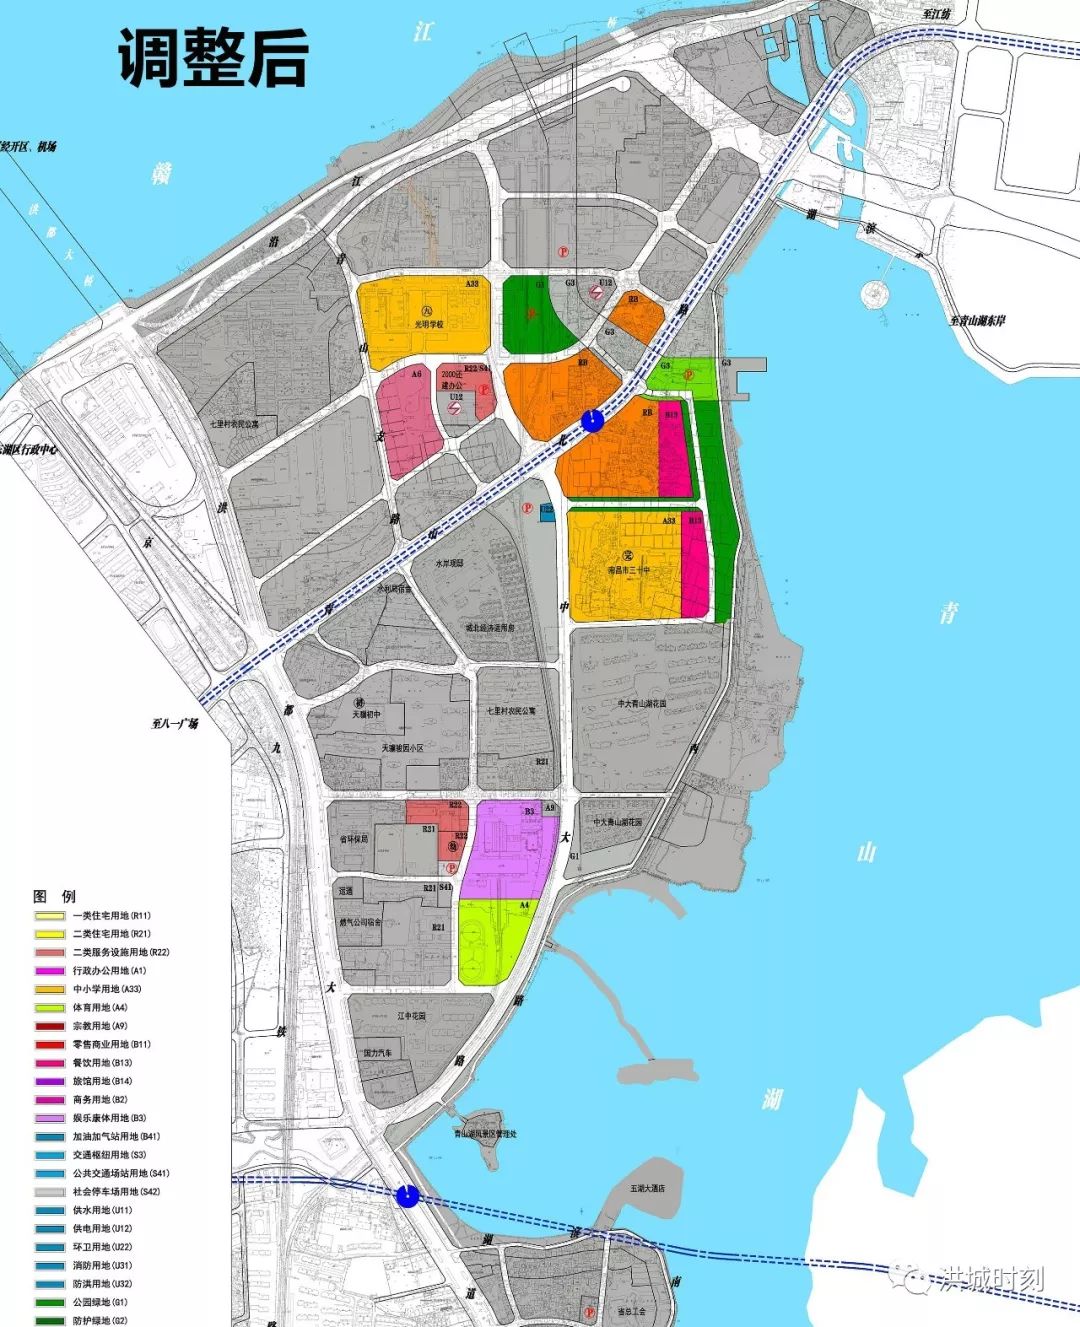 青山湖西岸地铁口新增大型商住用地!将建设新城市综合体!